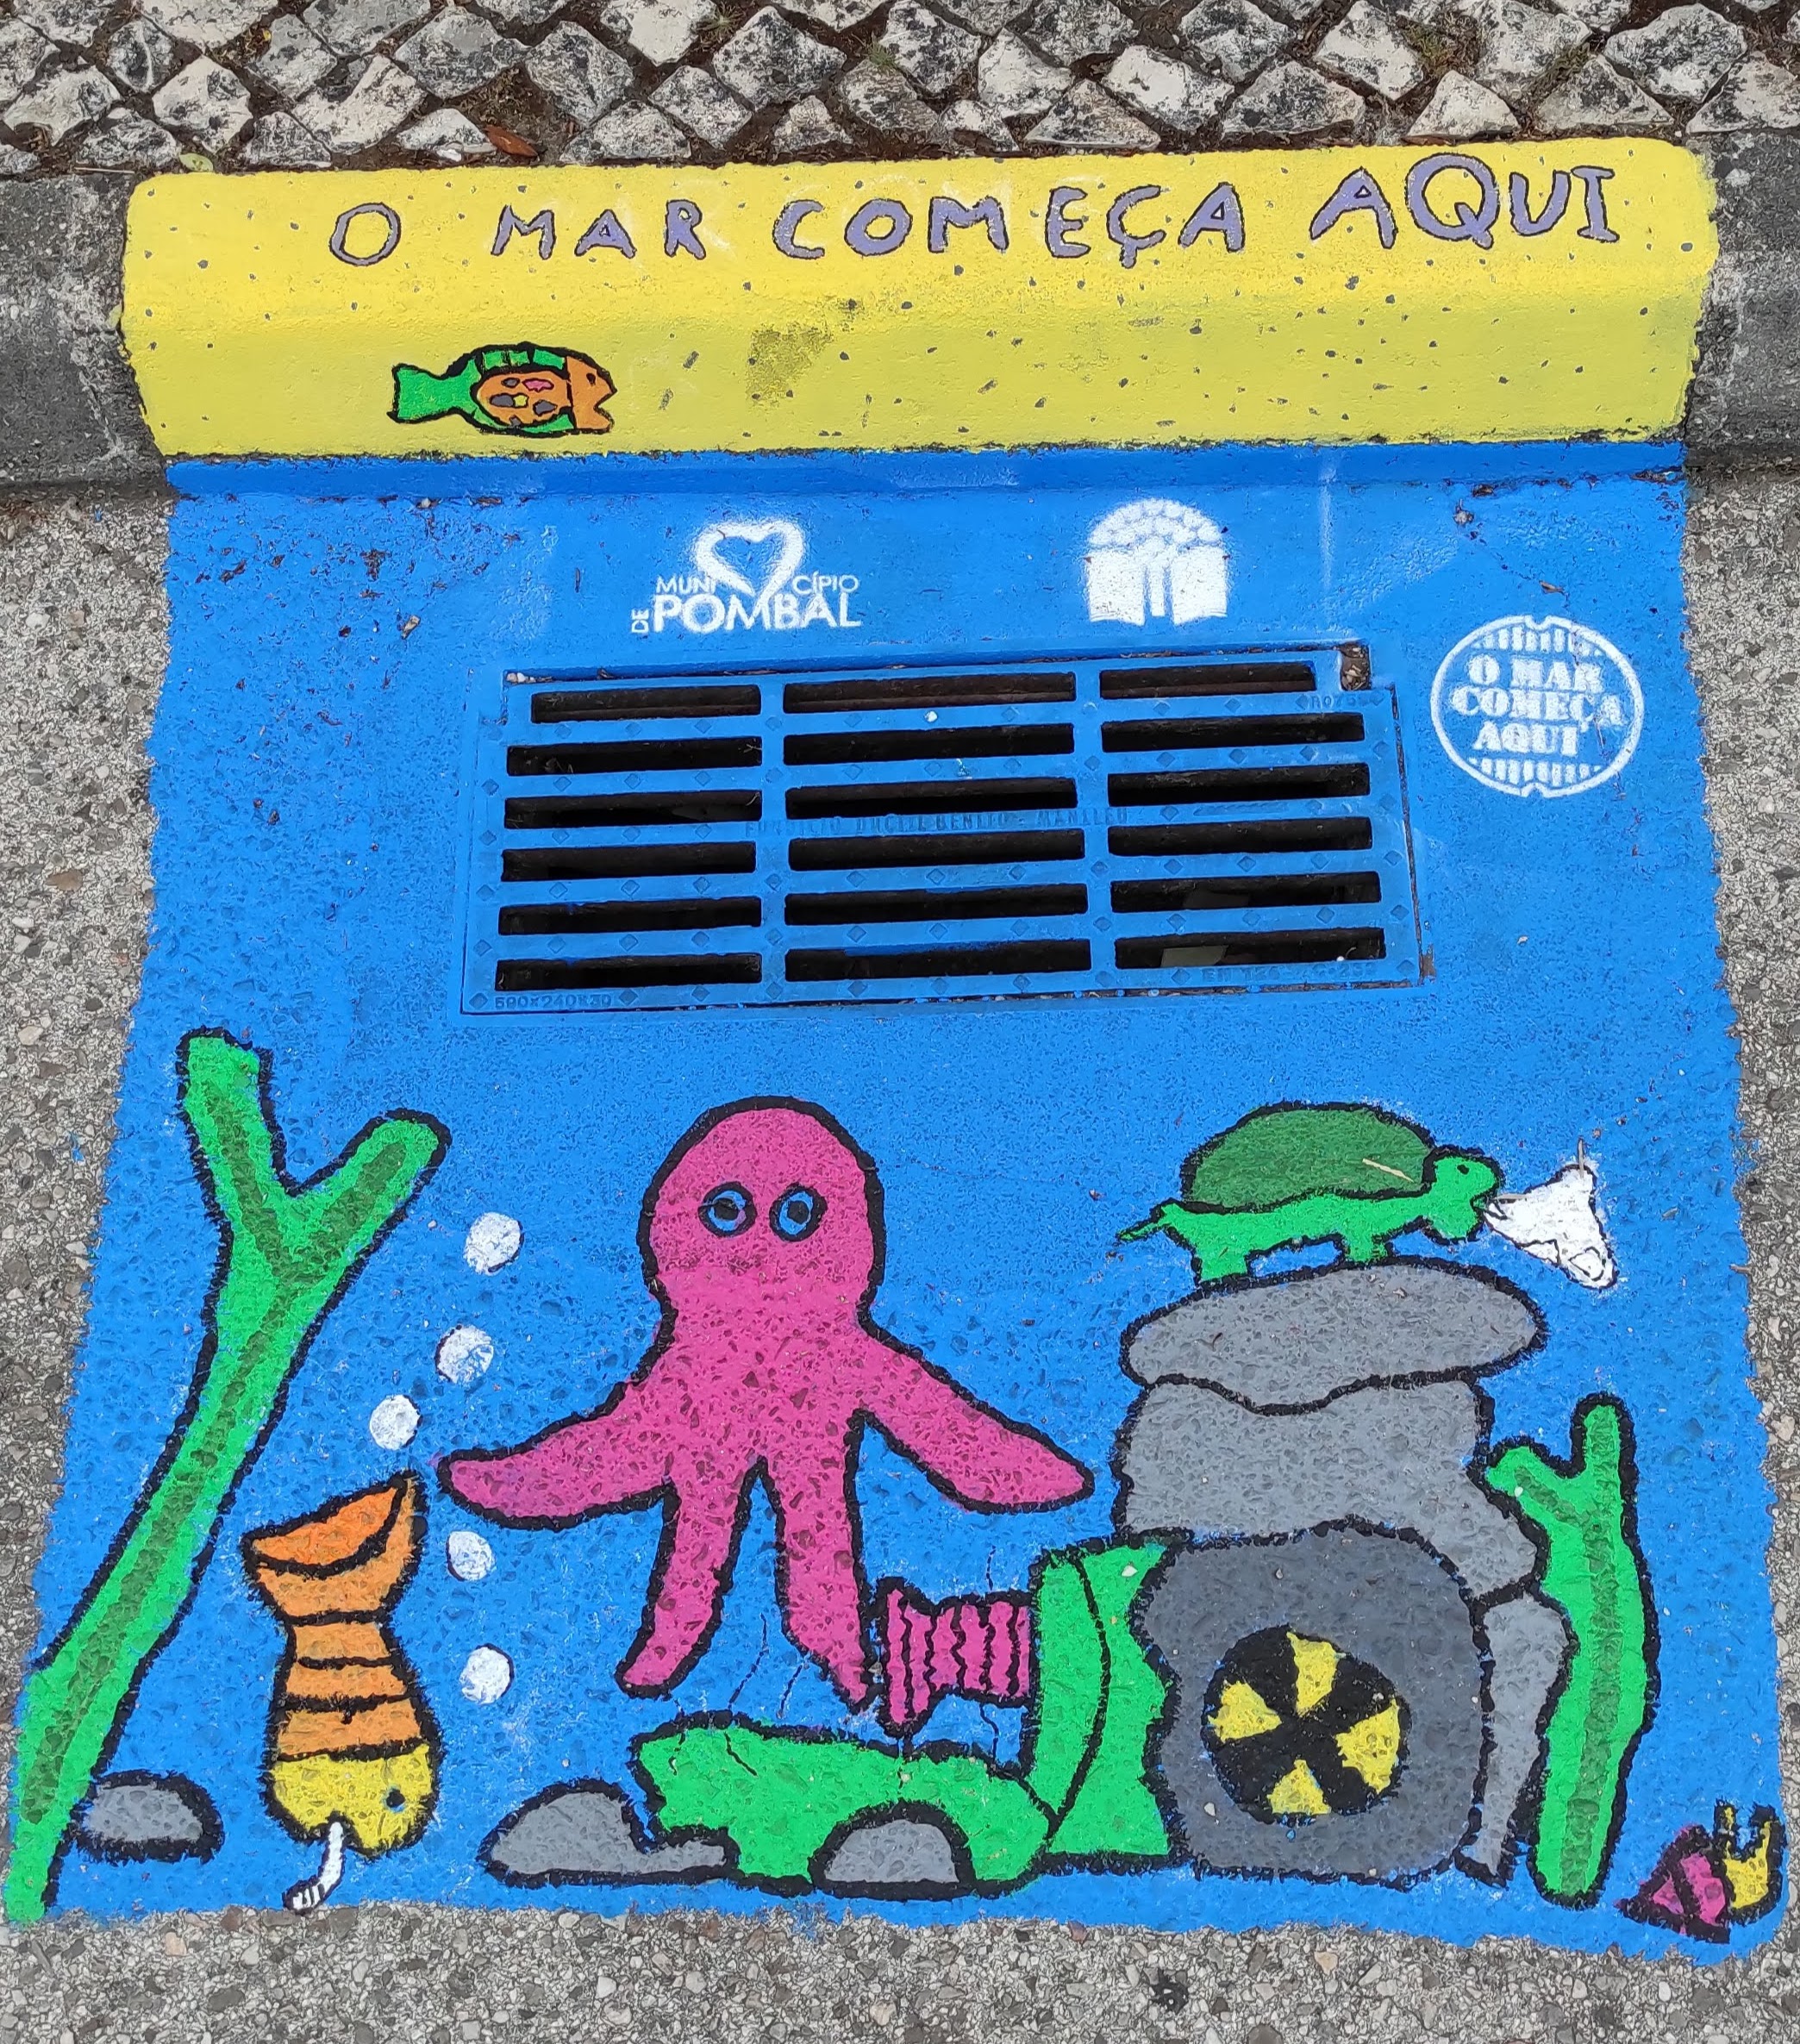 Colégio João de Barros<br />
Sarjeta pintada fora da escola